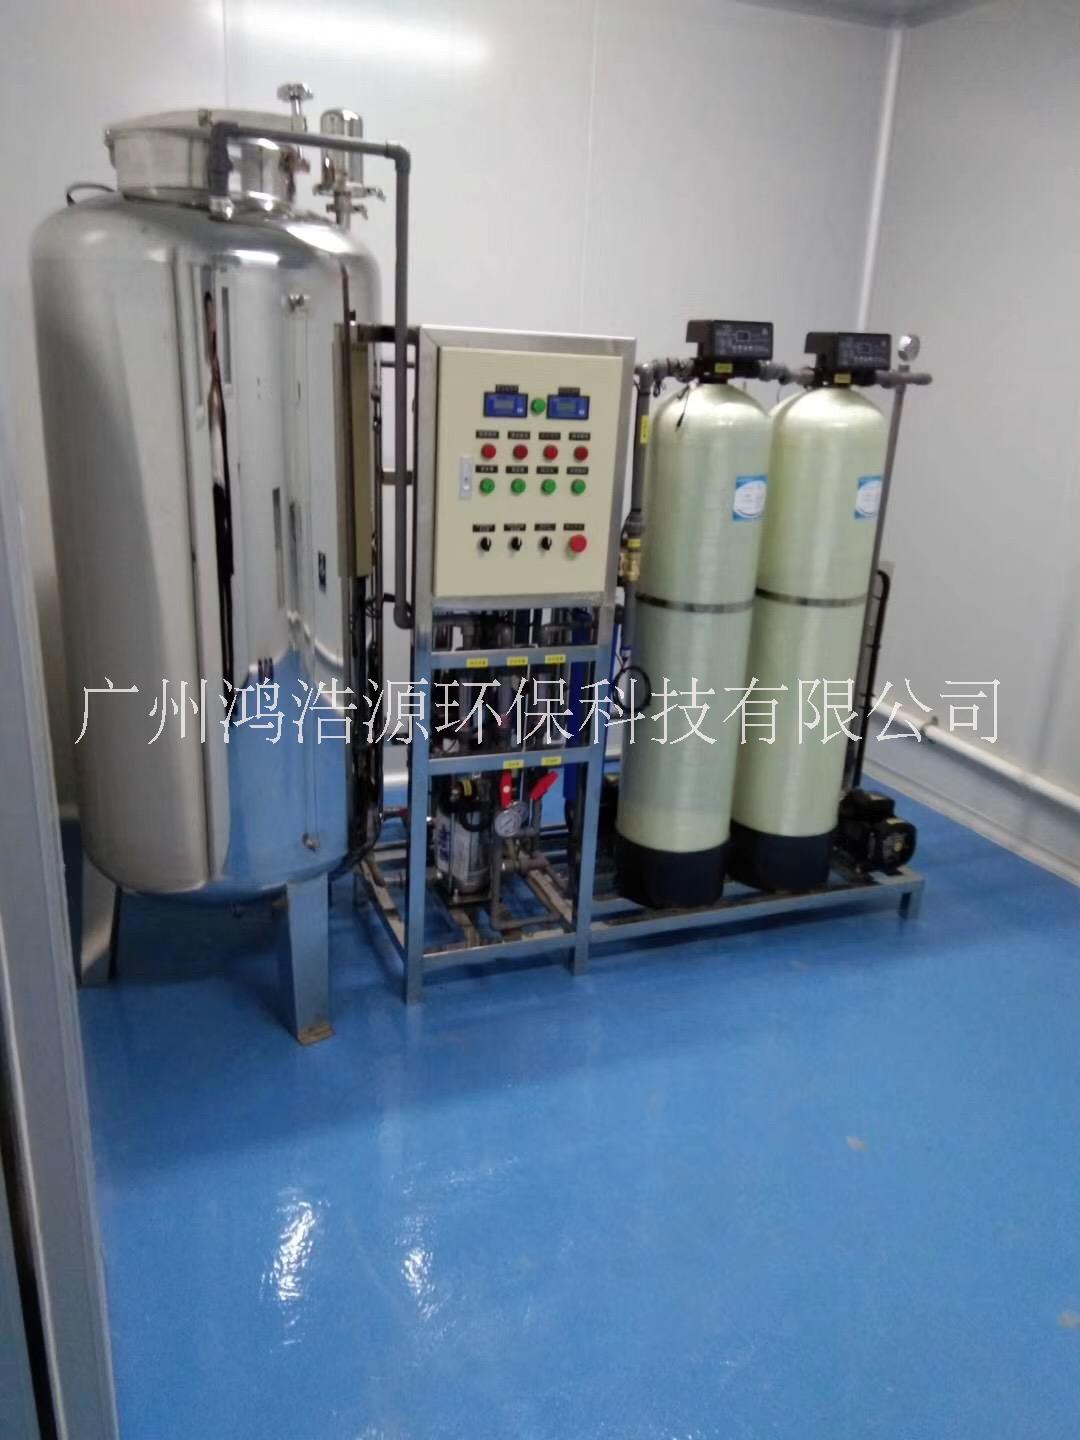 广州水处理厂家生产供应 佛山高明水处理设备批发 纯水设备 反渗透设备 广州水处理公司